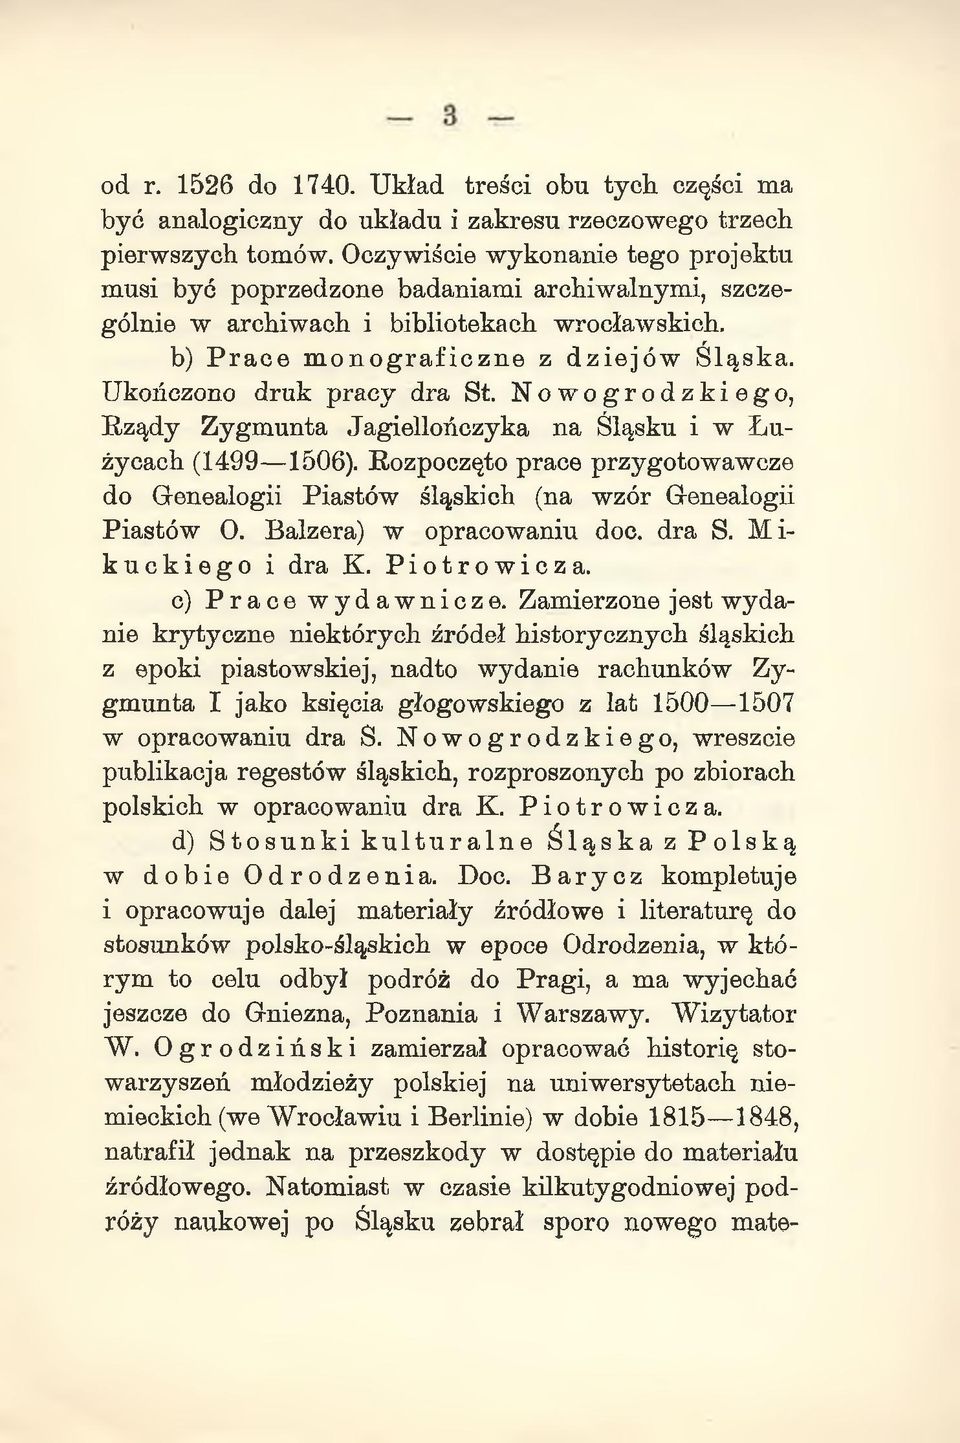 Ukończono druk pracy dra St. Nowogrodzkiego, Rządy Zygmunta Jagiellończyka na Śląsku i w Łużycach (1499 1506).